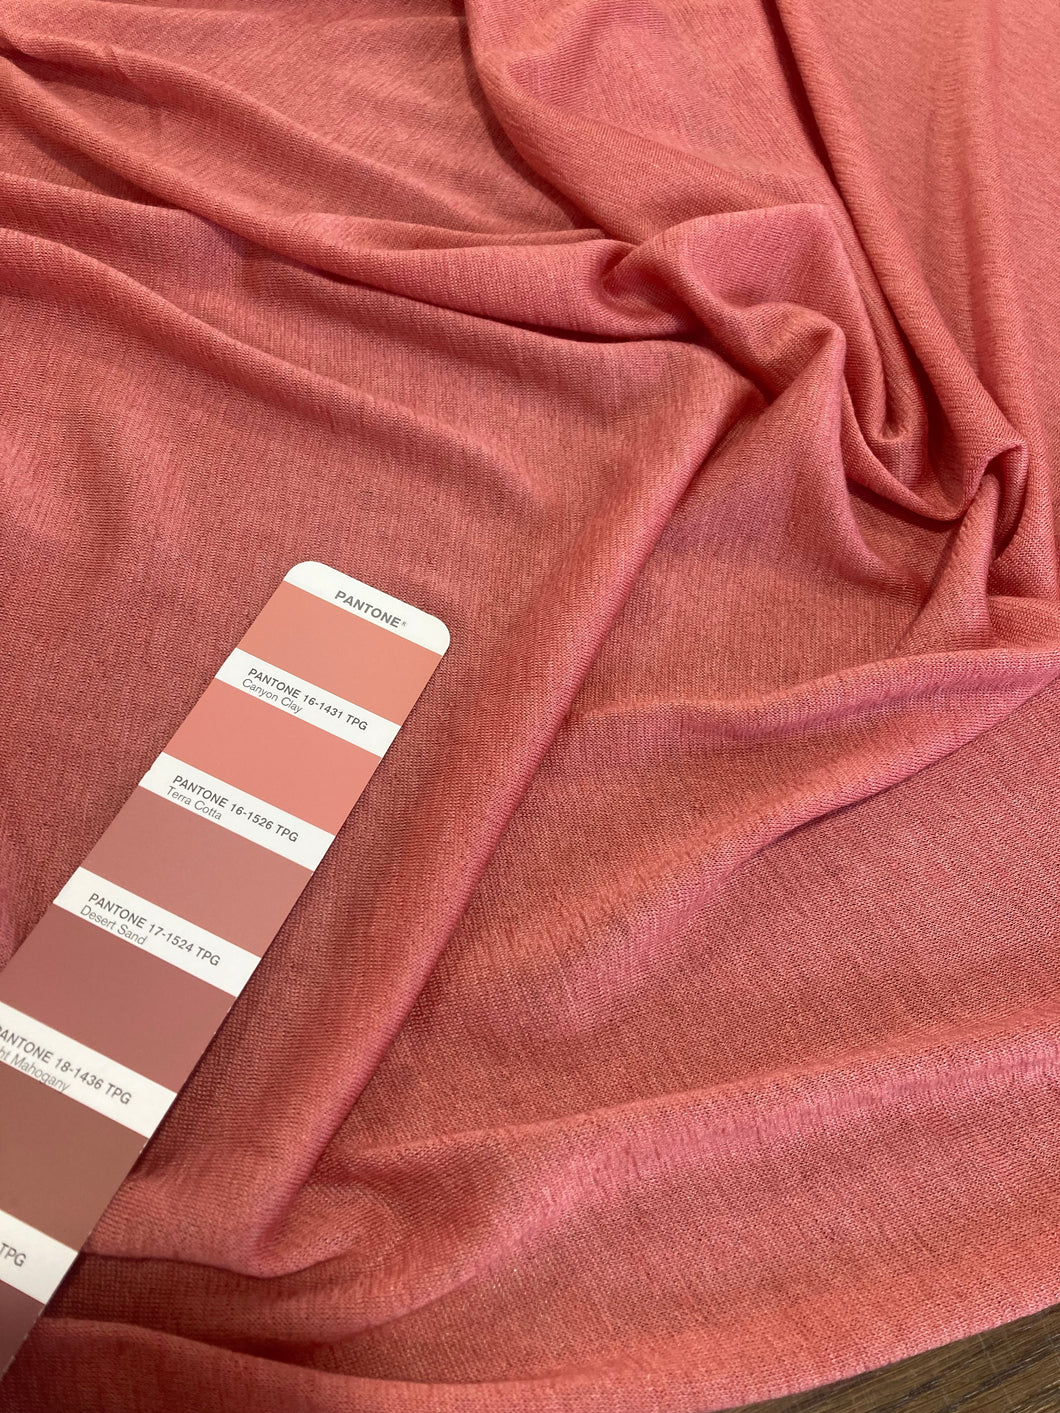 Maglia di cashmere rosa antico: 33€/m